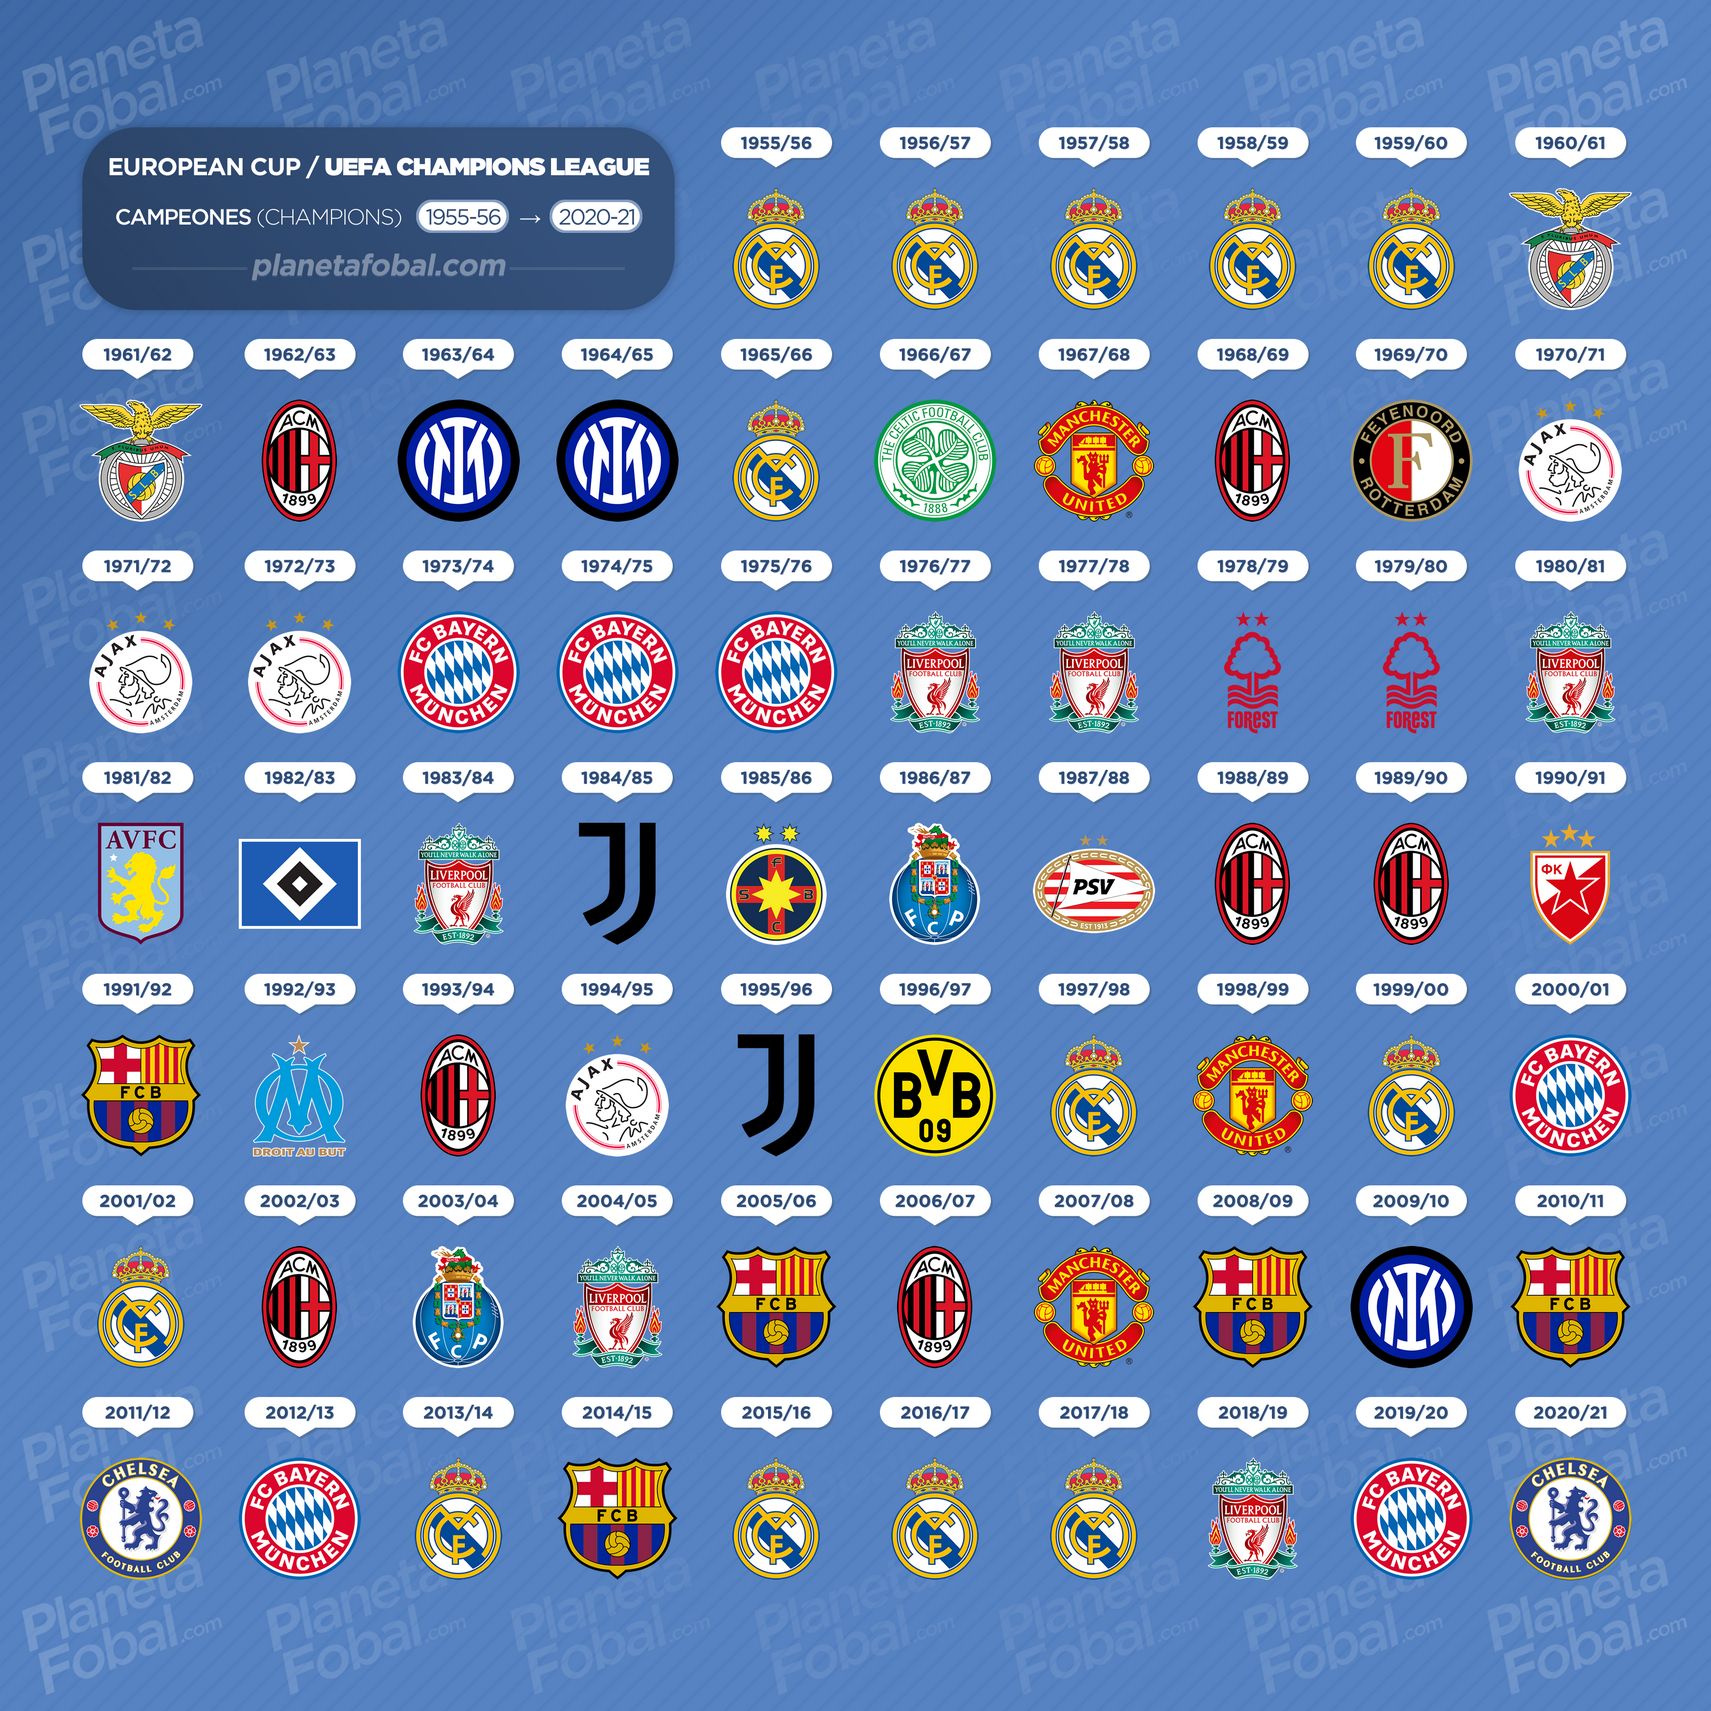 Campeones Copa de Europa / UEFA Champions League (1956-2021)